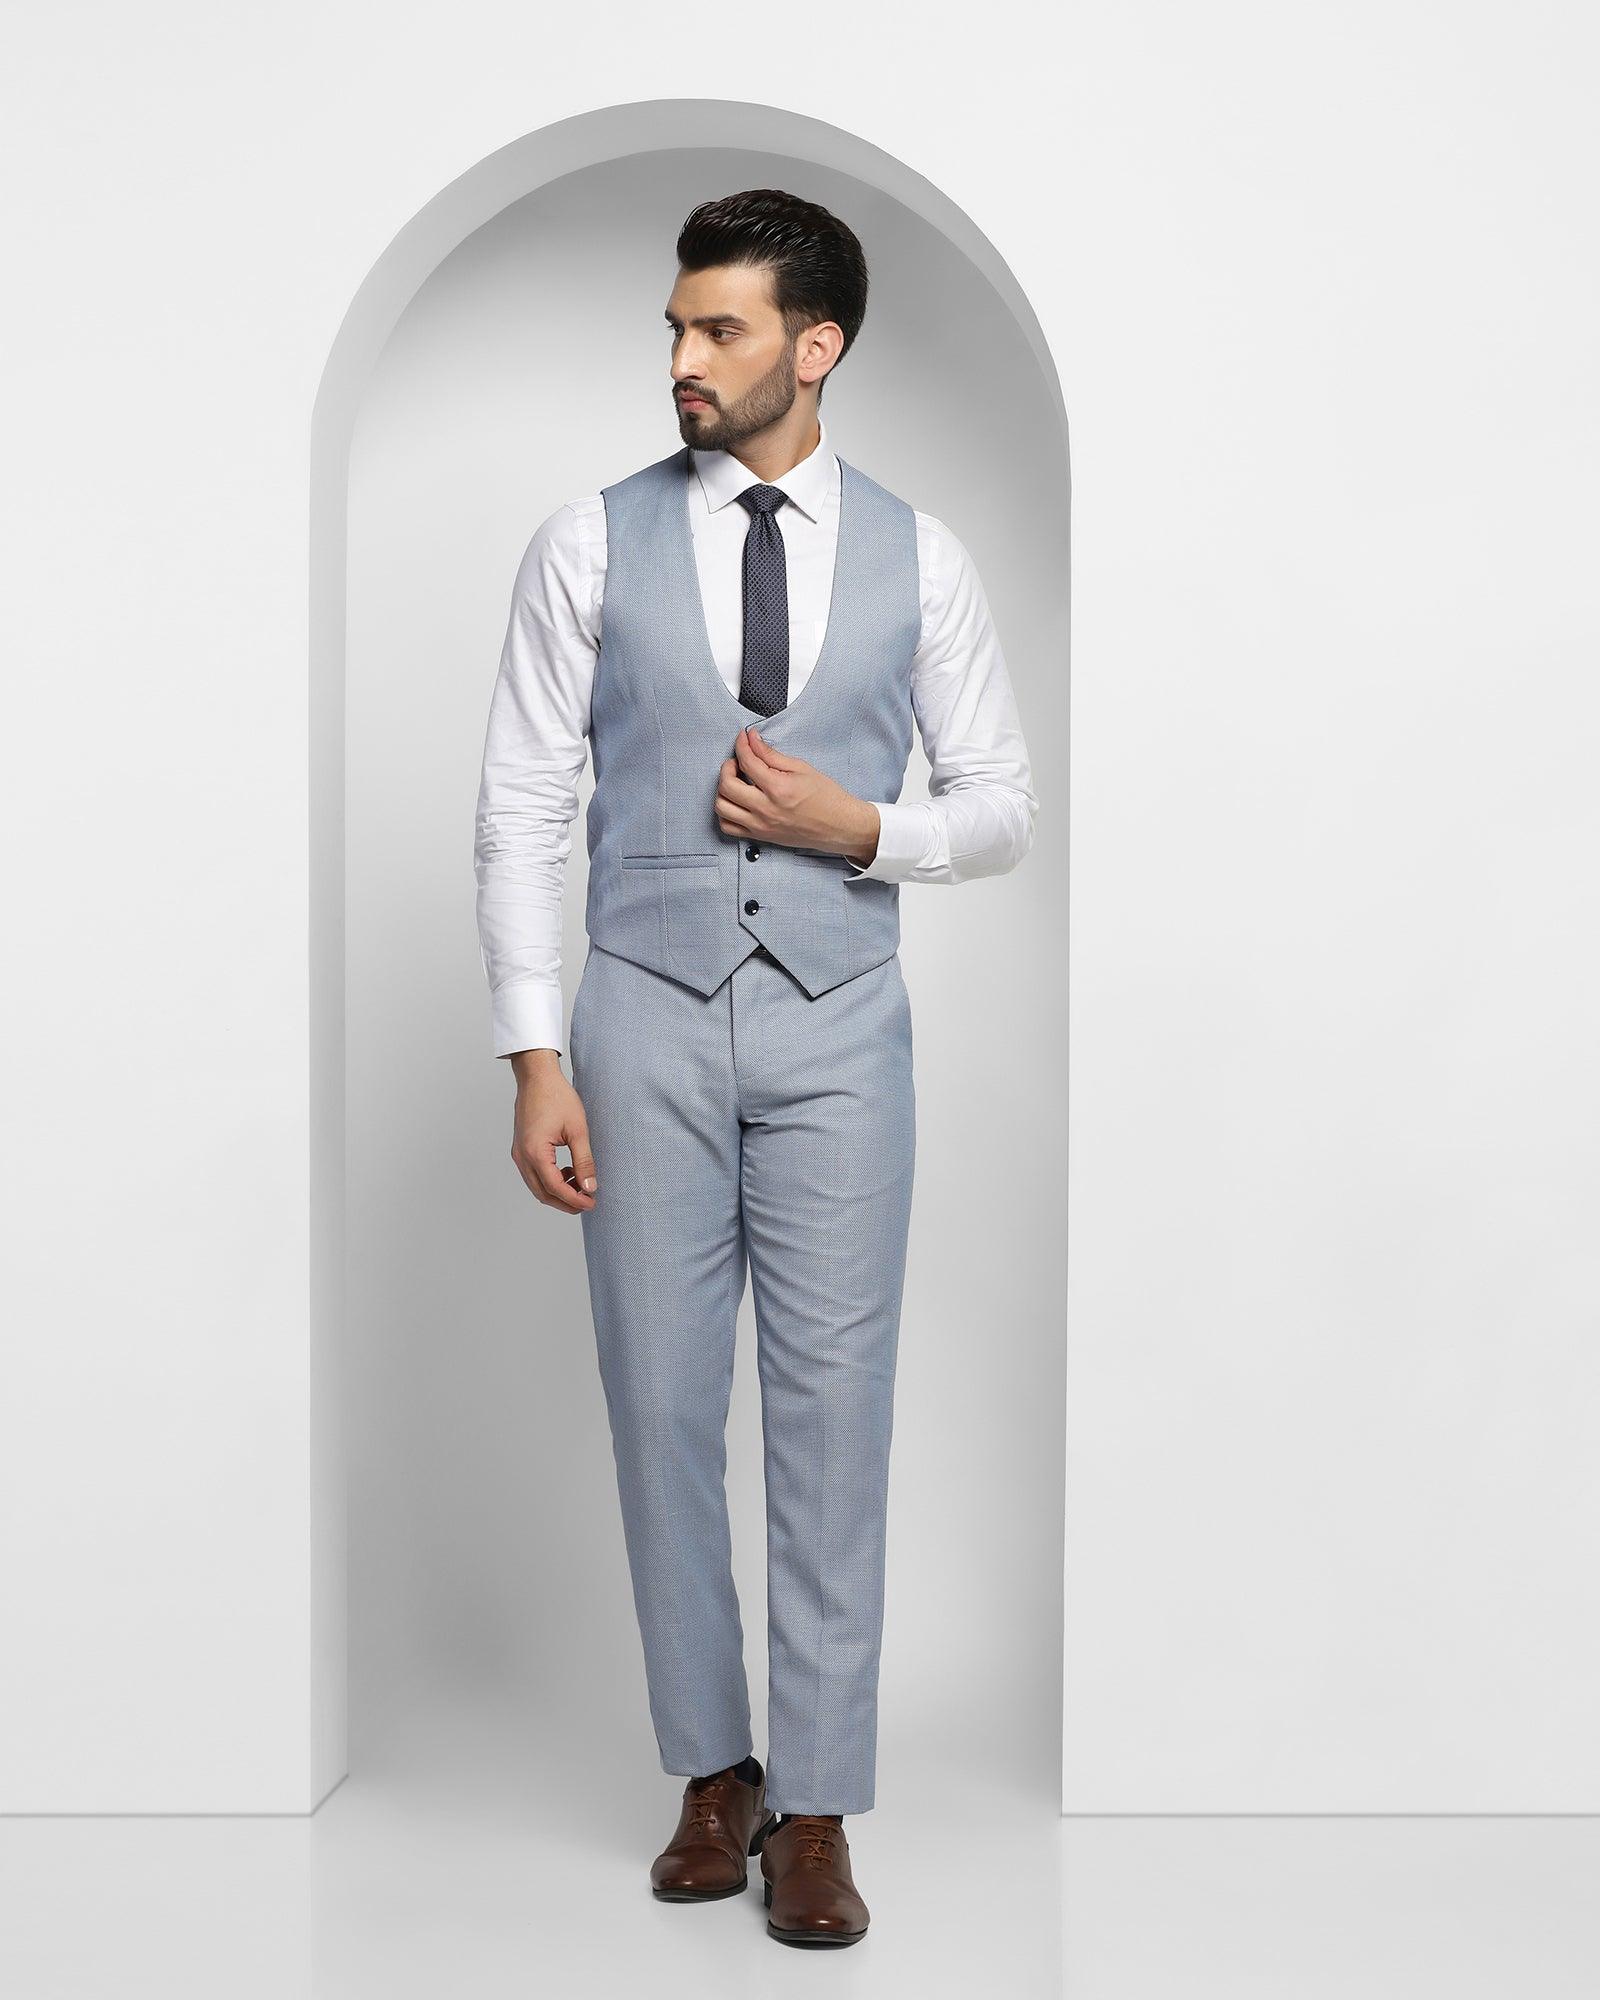 Men's suit Vest and Pants, Slim Fit, 2021 collection - CU159